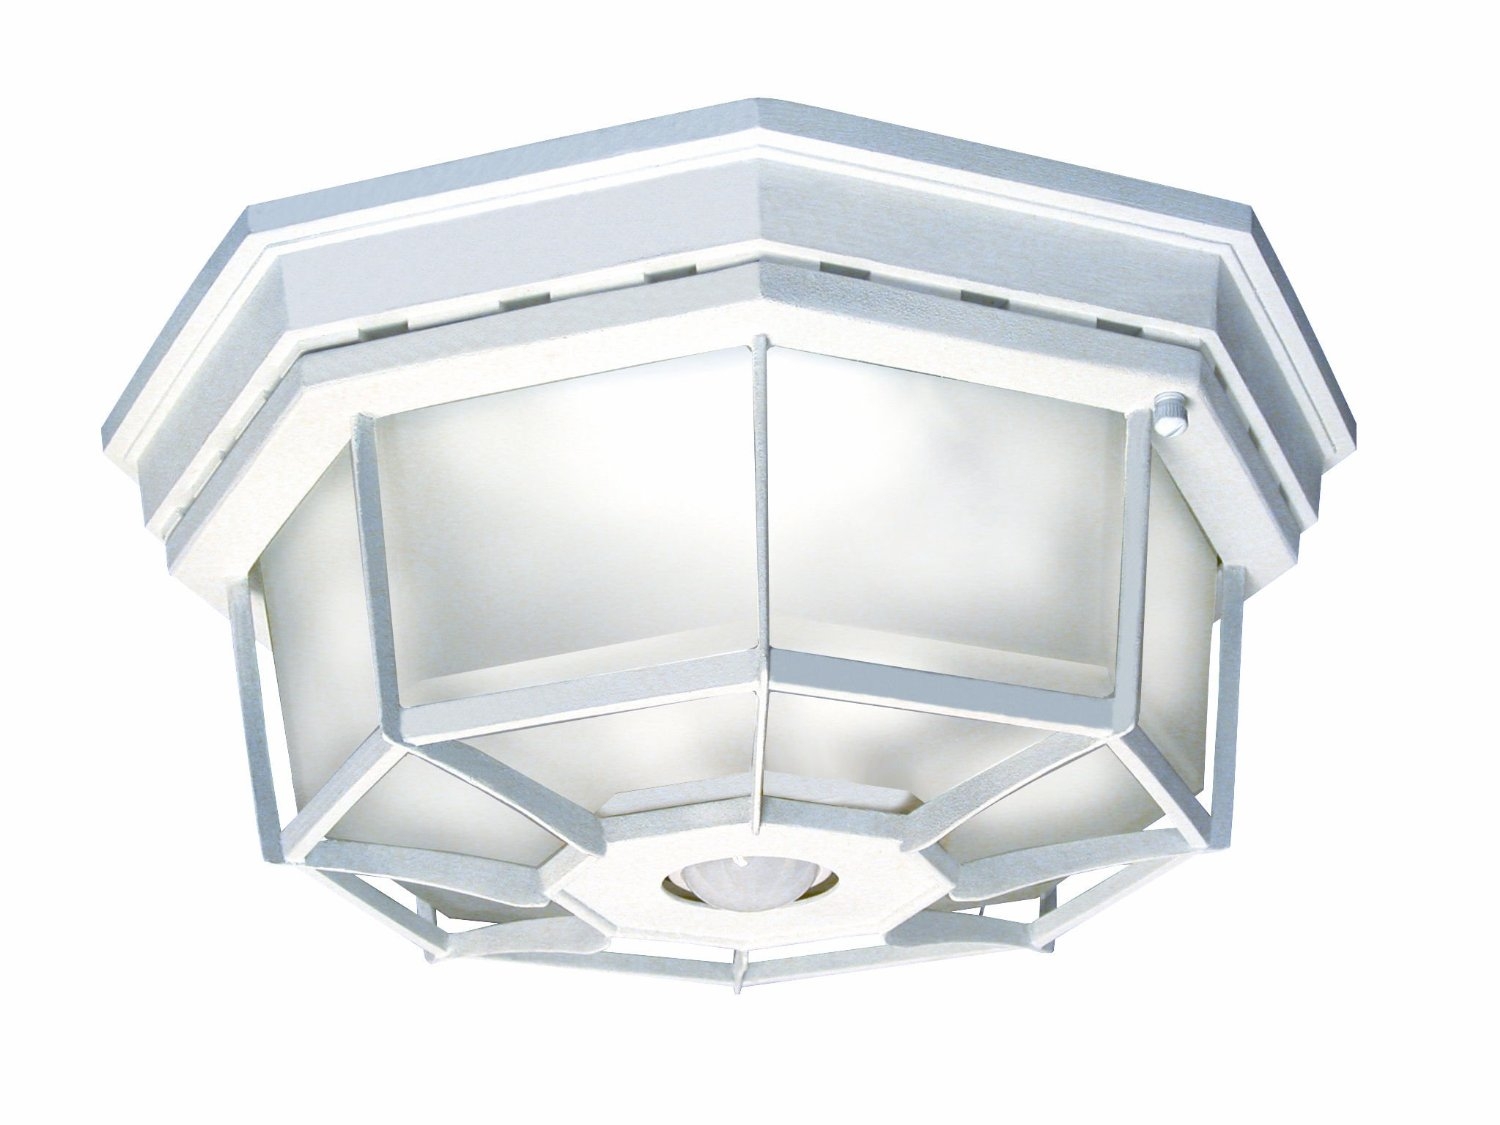 Indoor Motion Sensor Ceiling Light Fixture